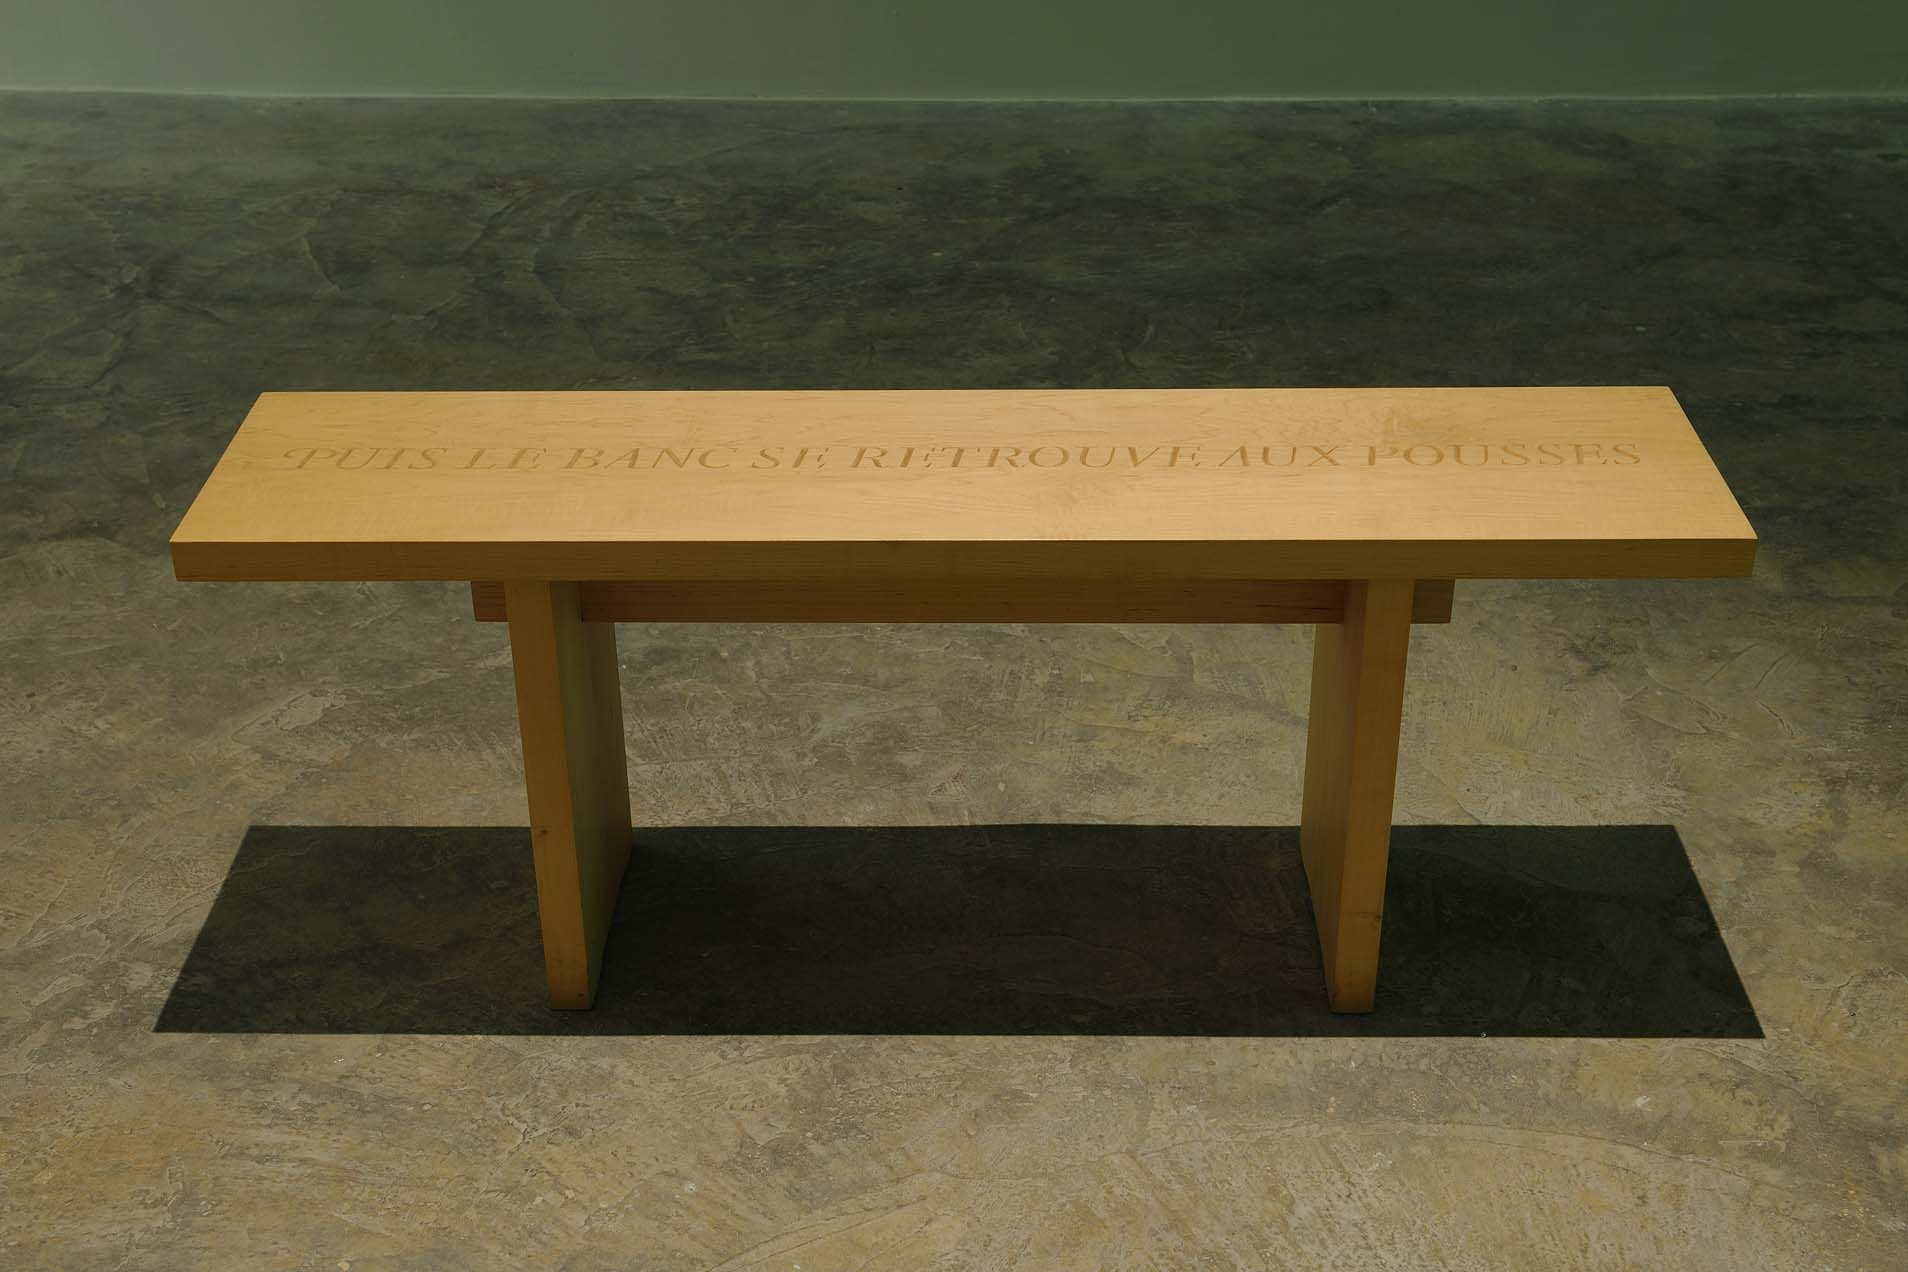 Puis le banc se retrouve aux pousses, 1997 with Caroline Webb, Wooden bench, 40 x 114 x 26 cm, Unique